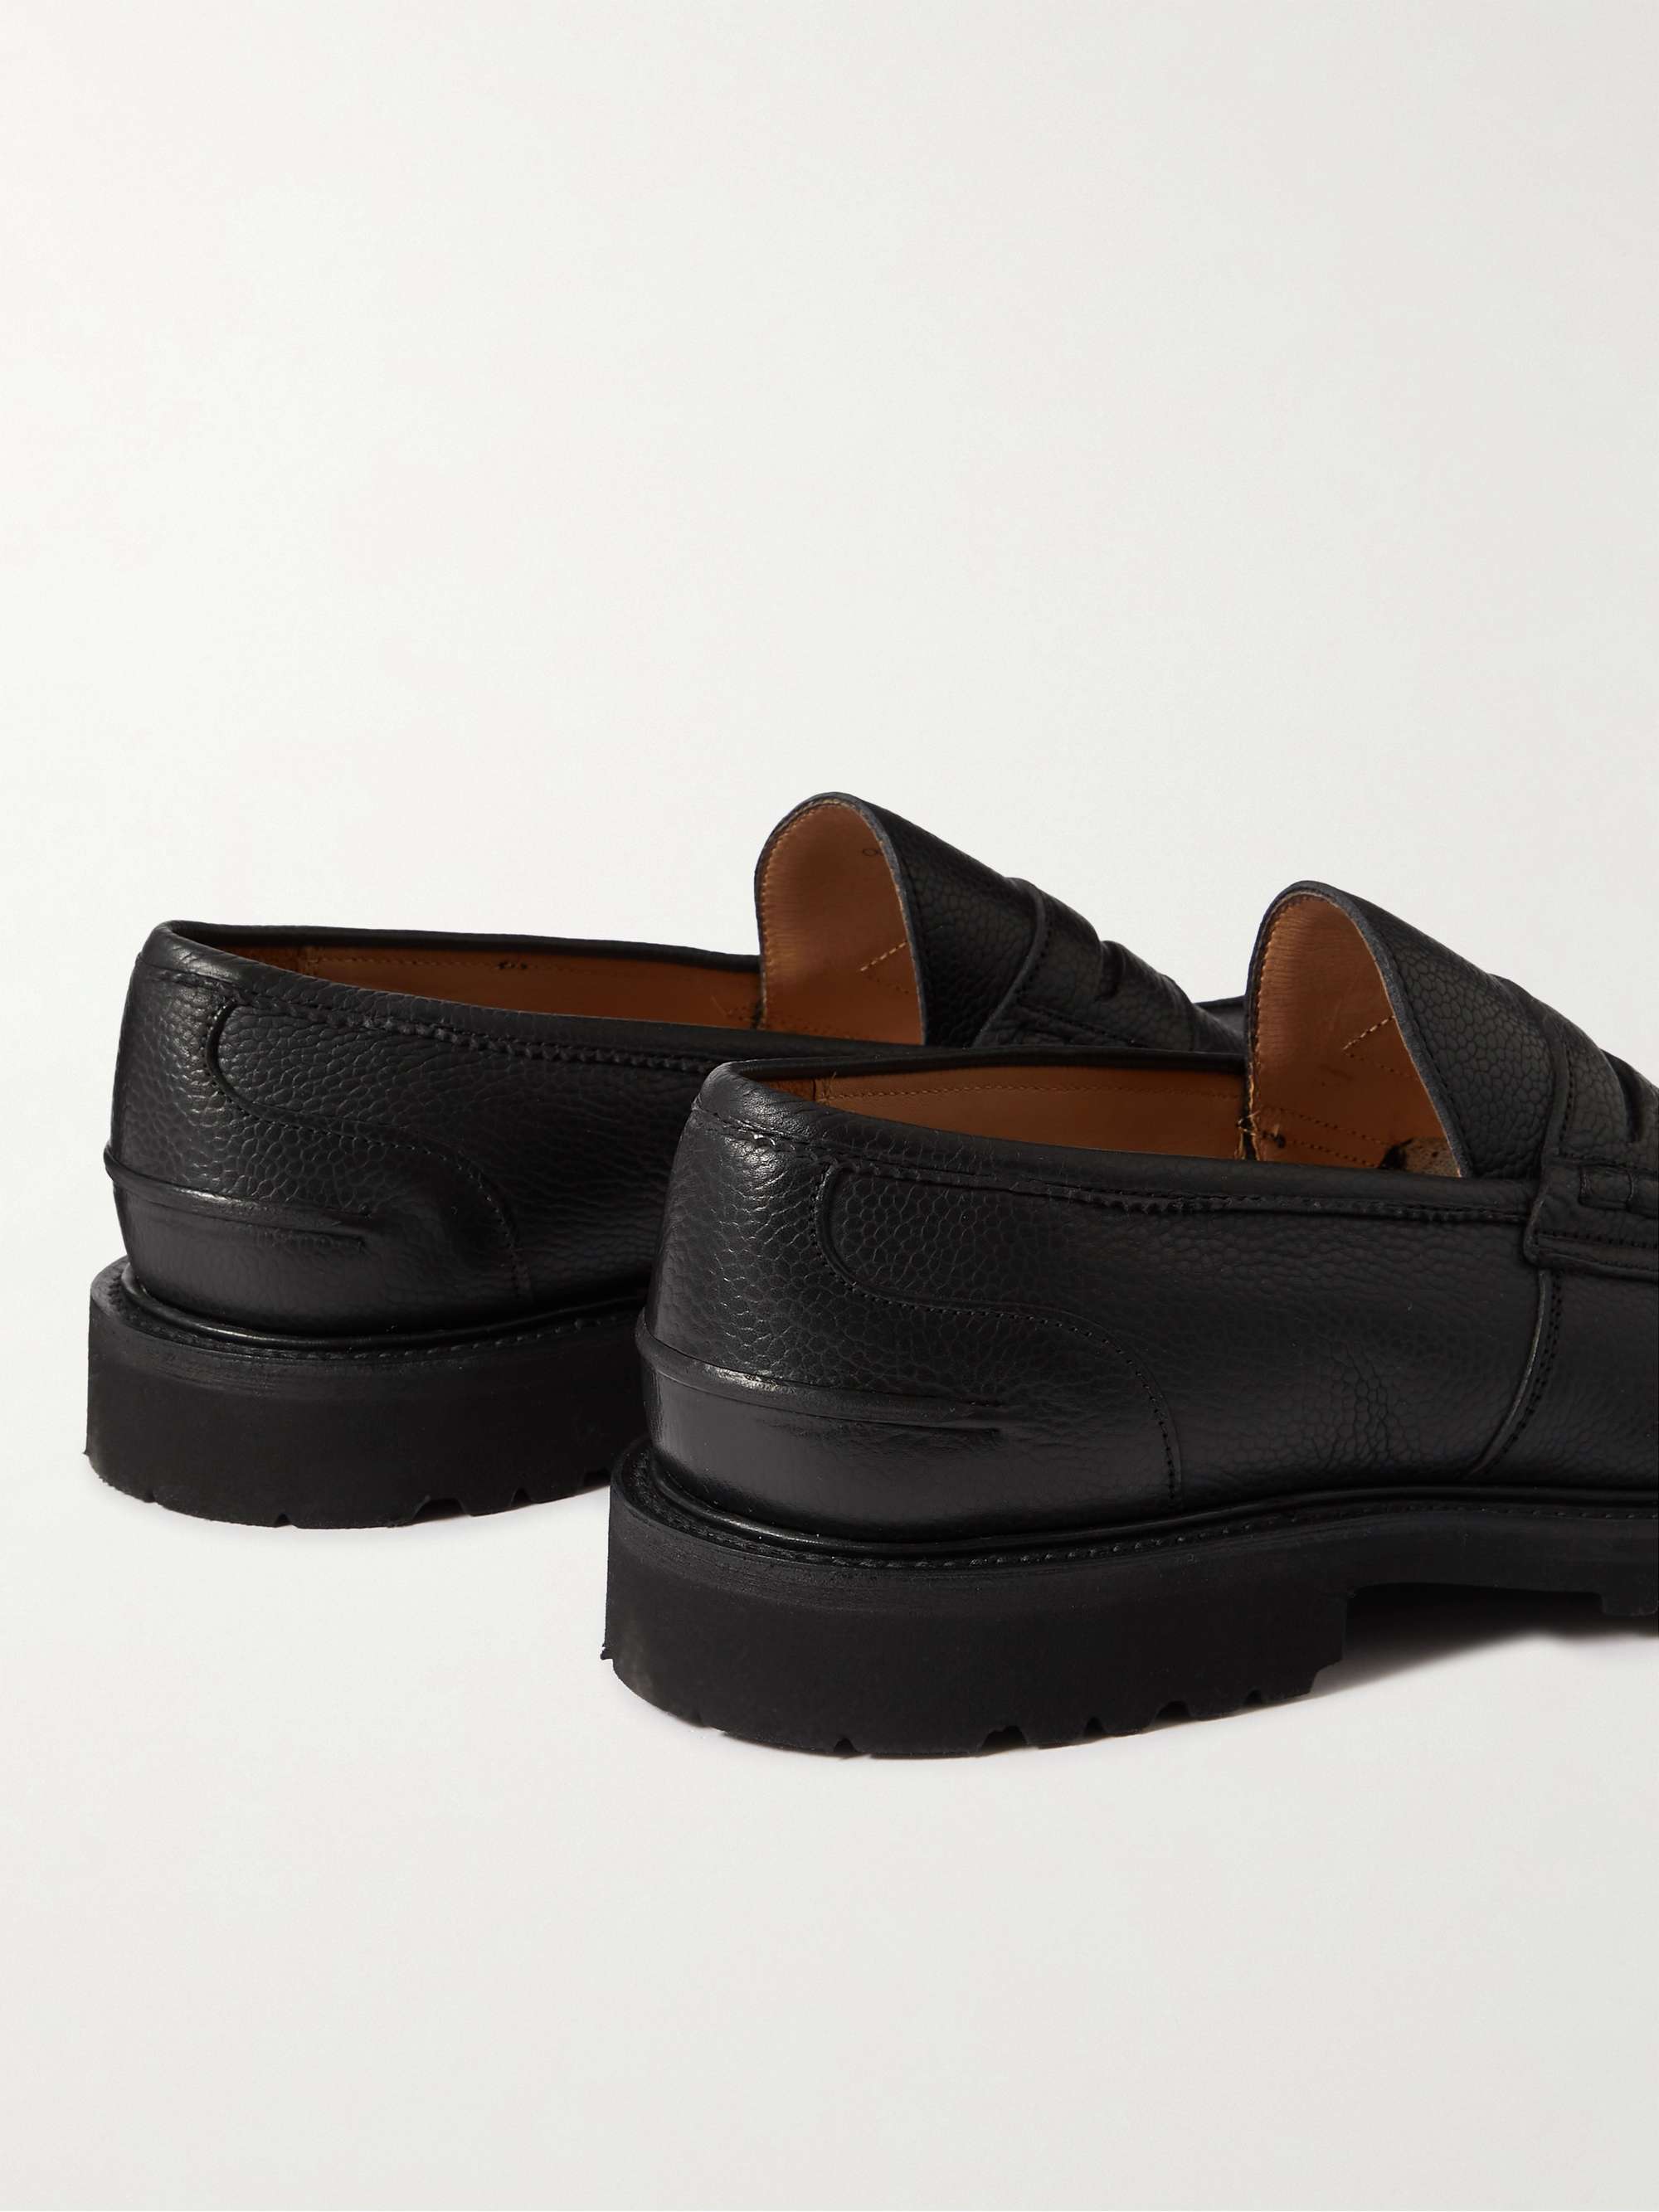 TRICKER'S James Full-Grain Leather Penny Loafers for Men | MR PORTER